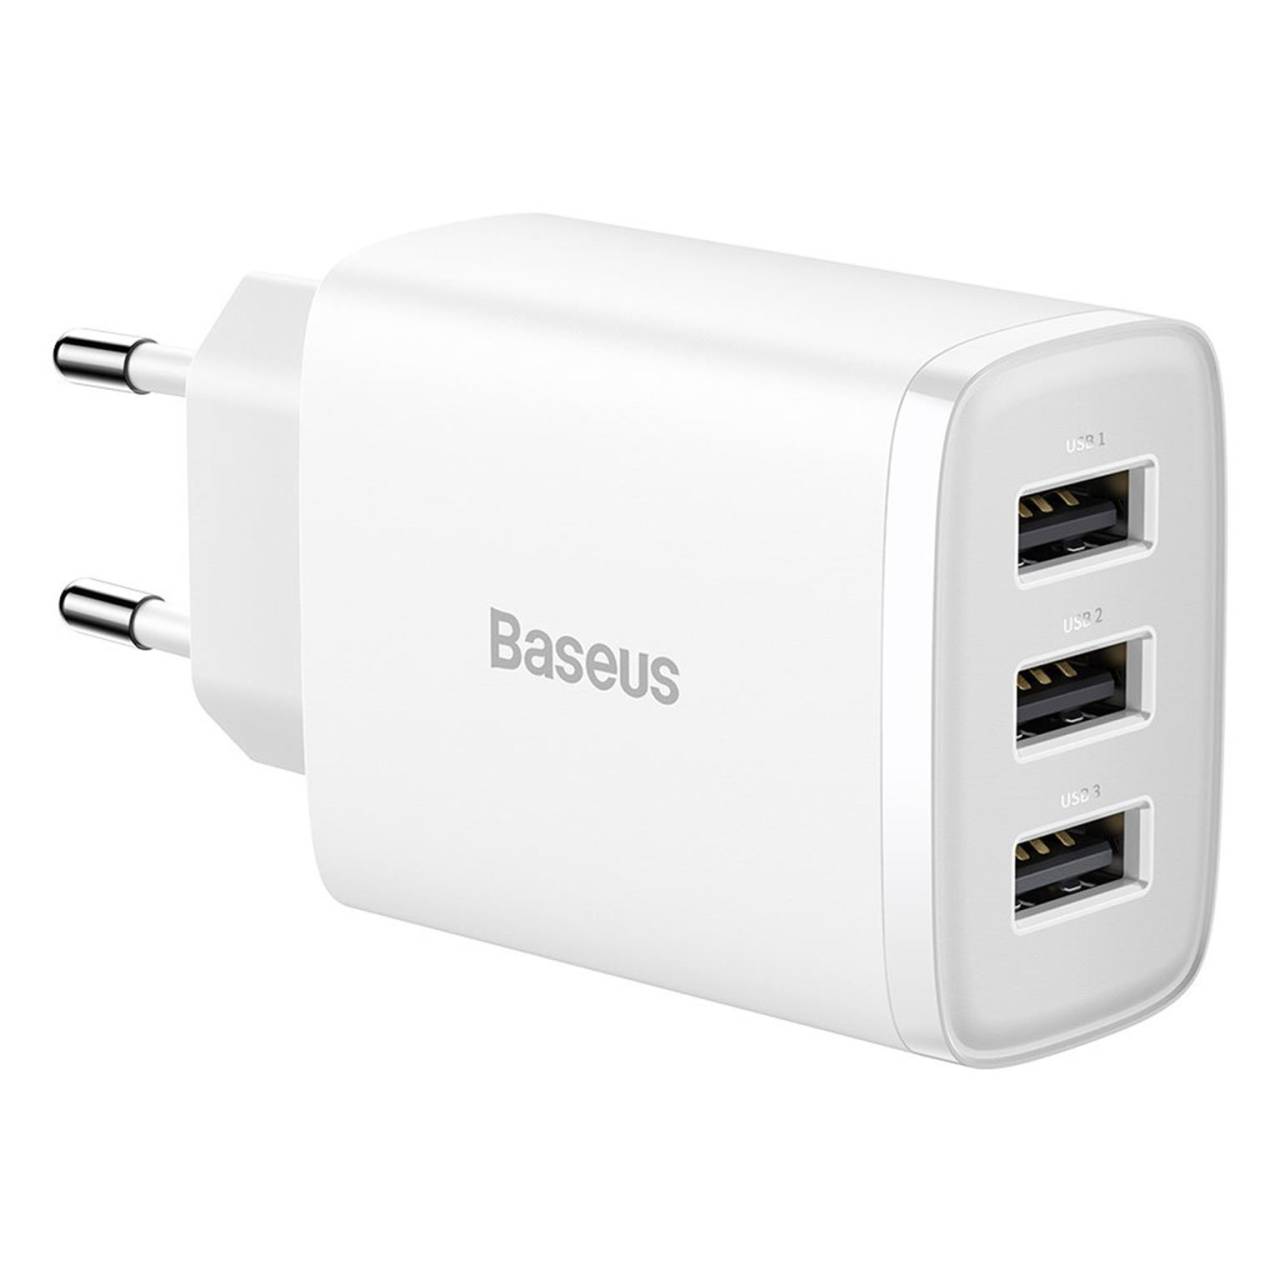 Baseus Netzteil – 3x USB-A Ladegerät für Smartphones und andere Geräte, Compact Serie, 17W